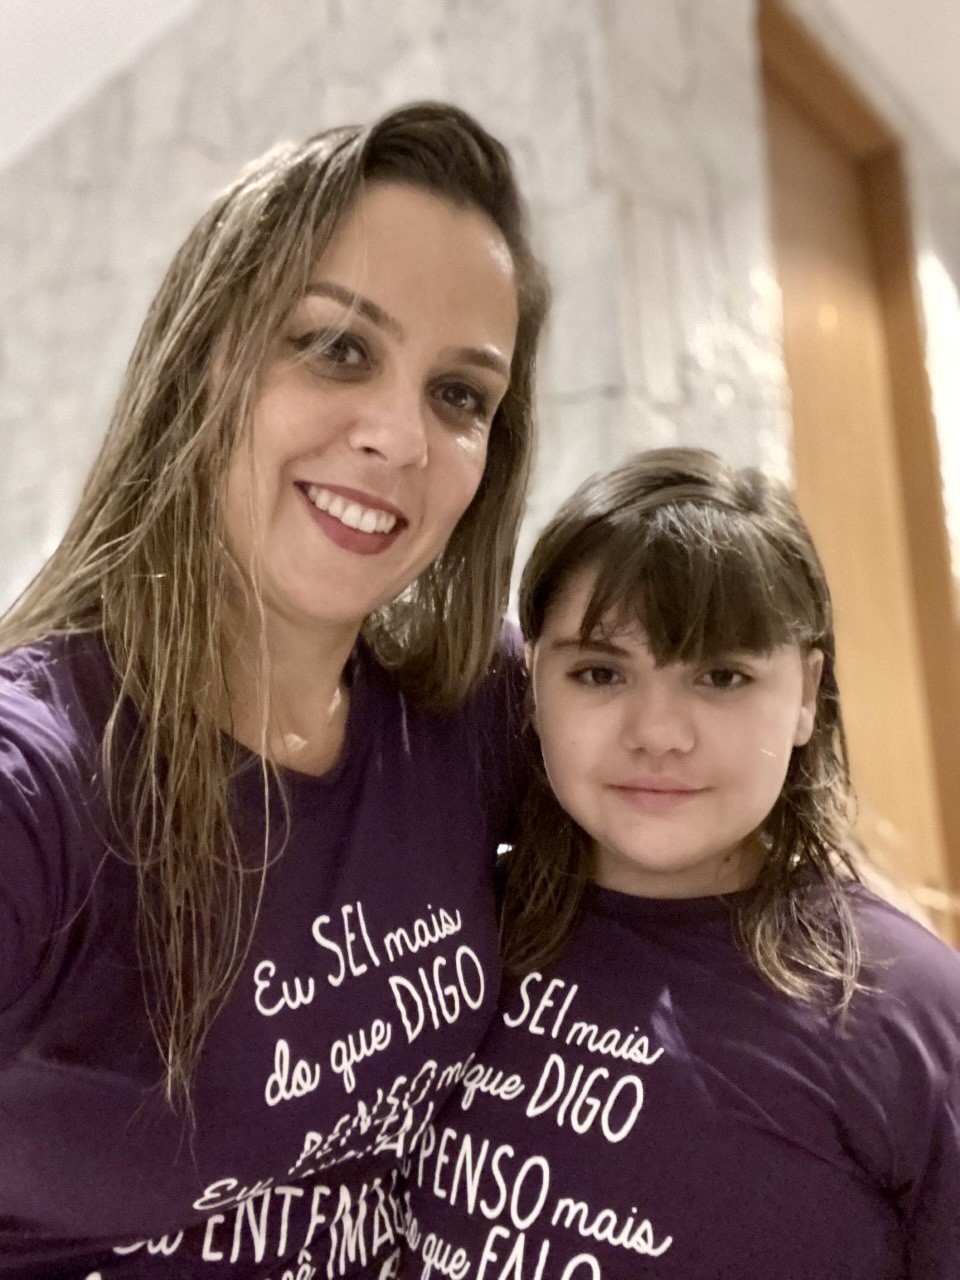 Fabiana Garofalo Collavini Cunha e a filha, Ana Beatriz: luta pela divulgação da apraxia da fala (Foto: Arquivo Pessoal)